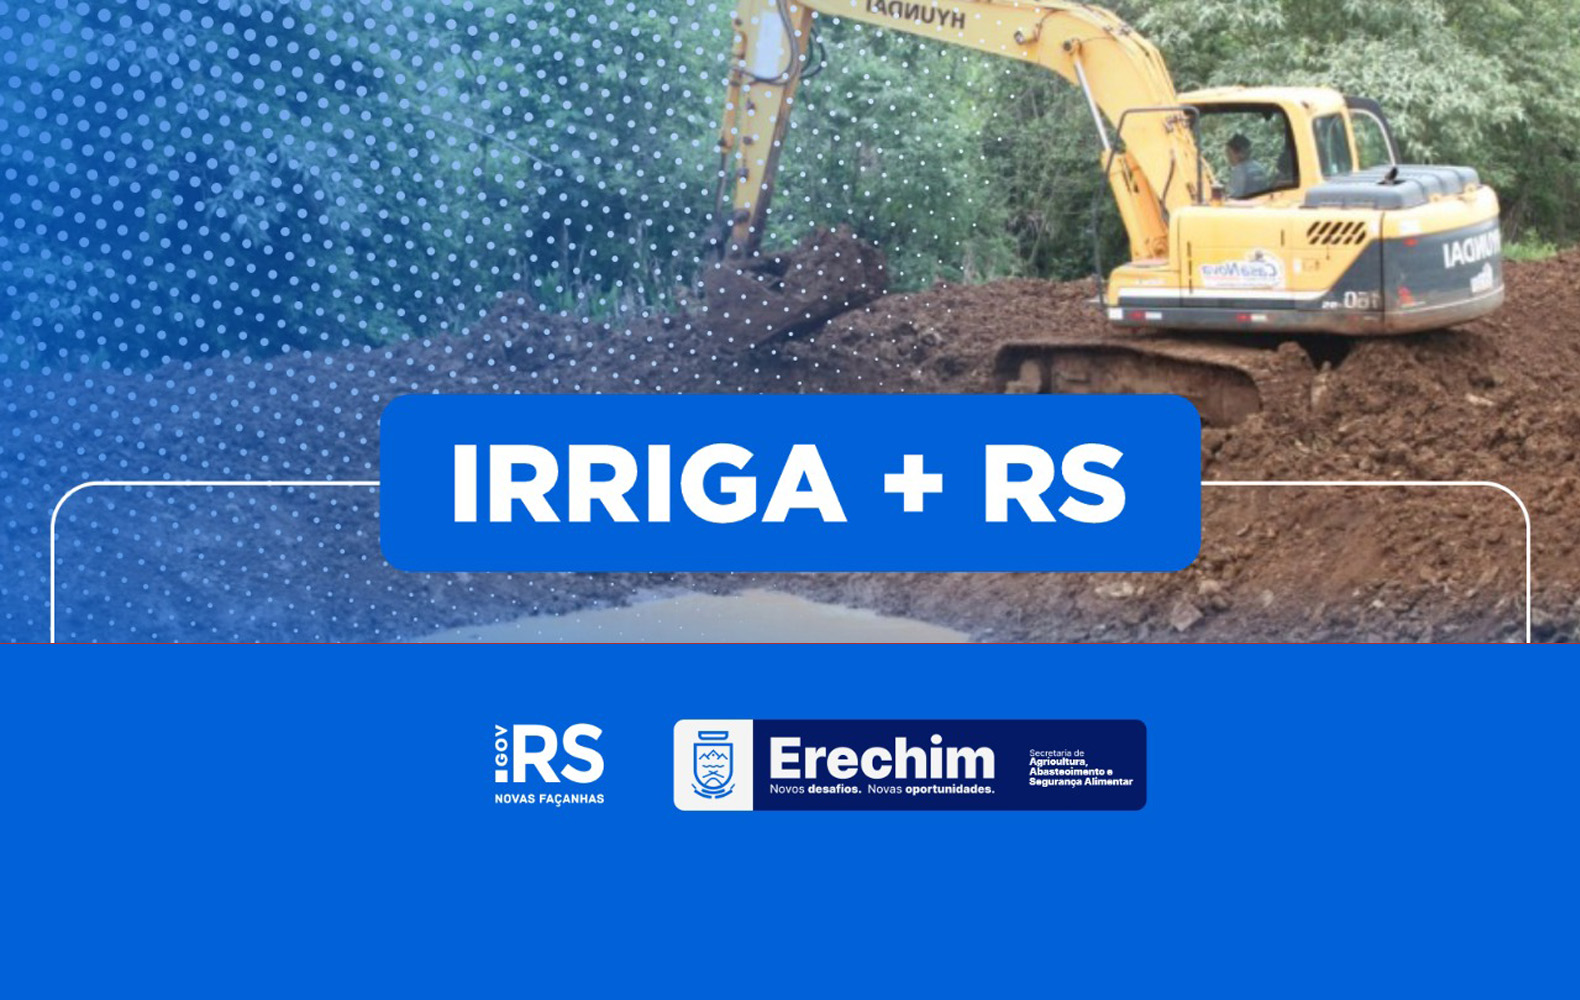  Agricultores podem se inscrever no Irriga + RS para constru??o de a?udes